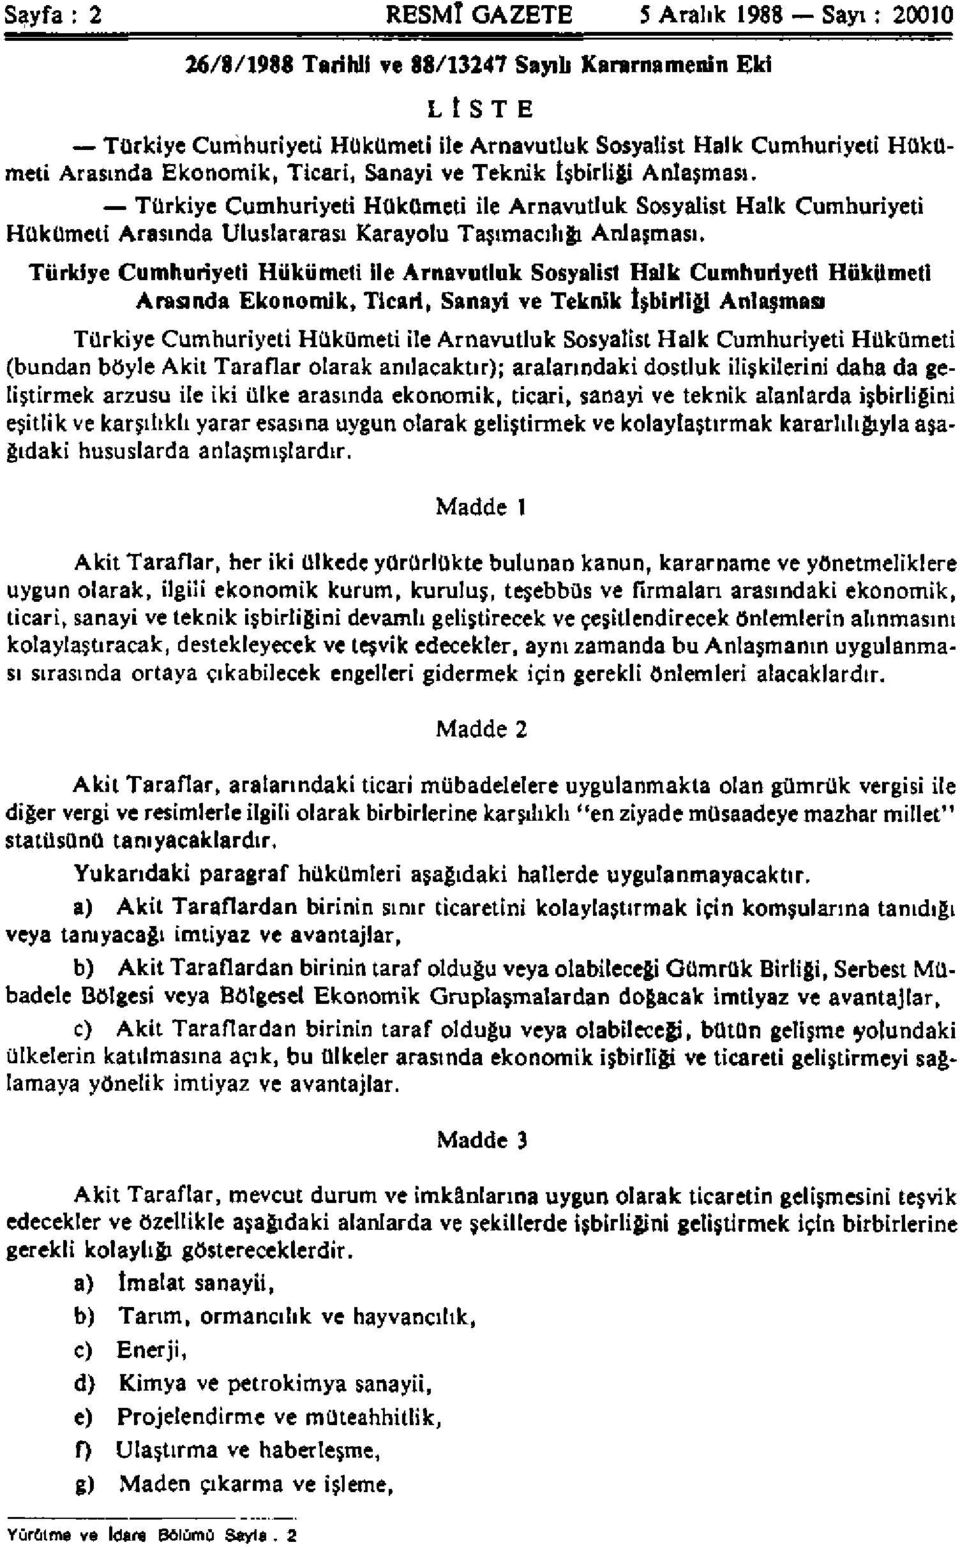 Türkiye Cumhuriyeti Hükümeti ile Arnavutluk Sosyalist Halk Cumhuriyeti Hükümeti Arasında Ekonomik, Ticari, Sanayi ve Teknik İşbirliği Anlaşması Türkiye Cumhuriyeti Hükümeti ile Arnavutluk Sosyalist